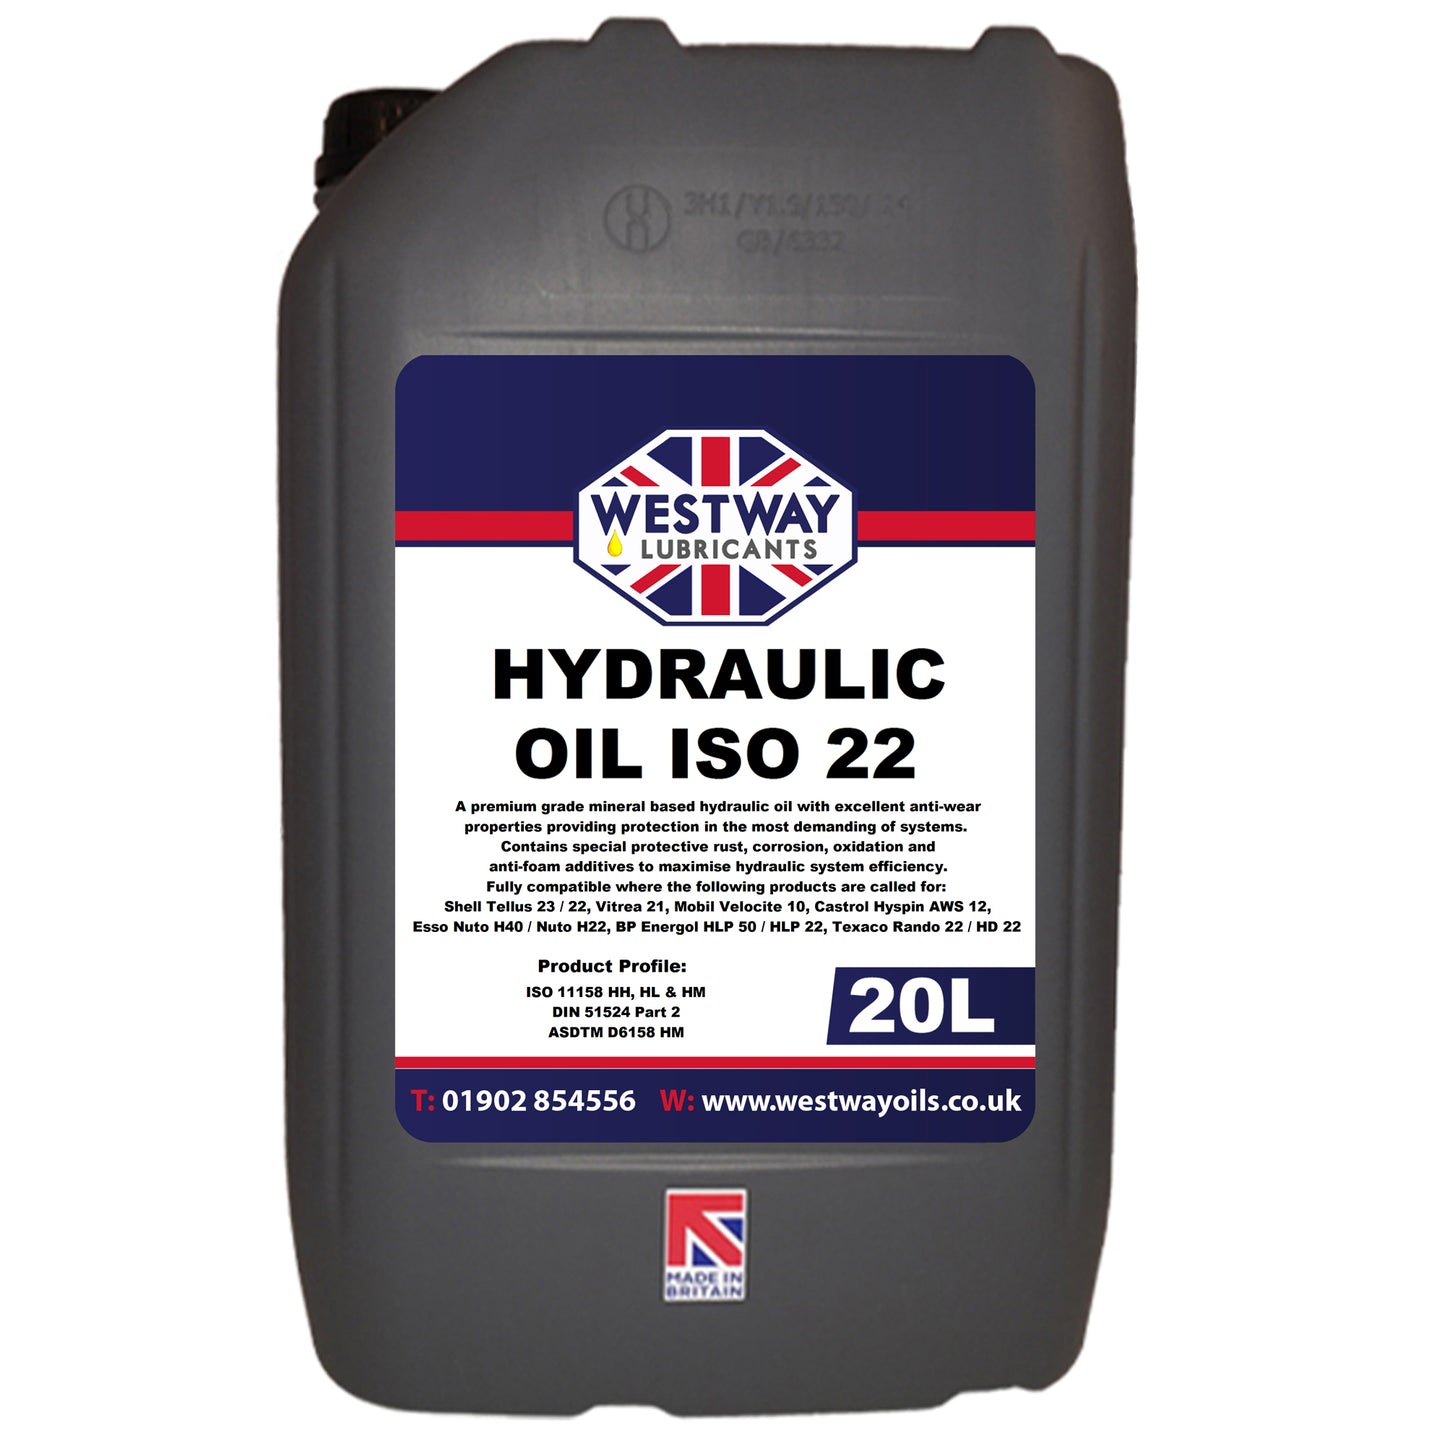 Hydraulic Oil ISO 22